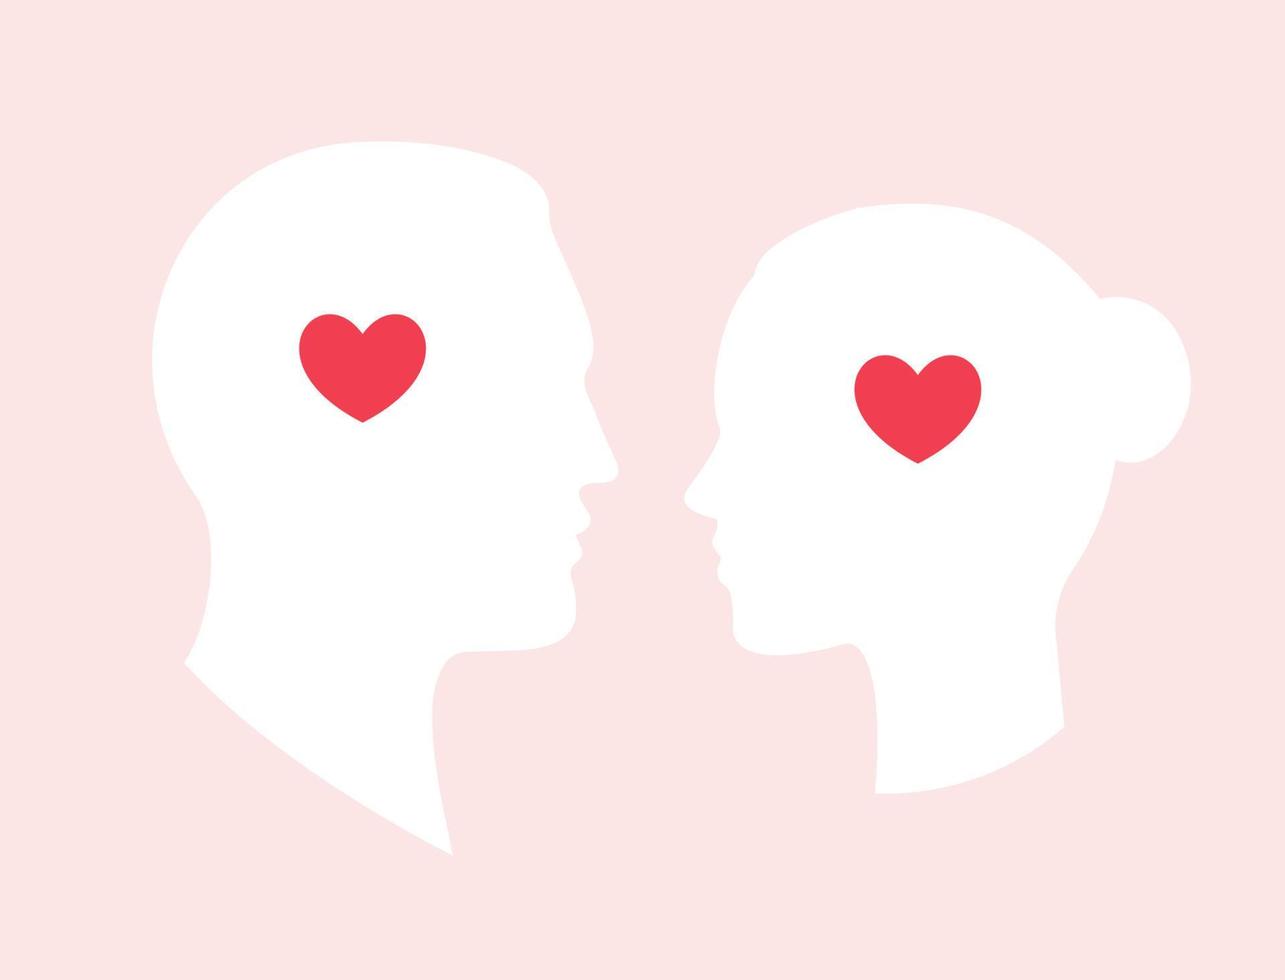 Jungen- und Mädchenkopfschattenbild mit Herzgehirn, Liebessymbol für Grußkarte, Hochzeit, Valentinstagfeiertag. Vektor-Illustration. vektor